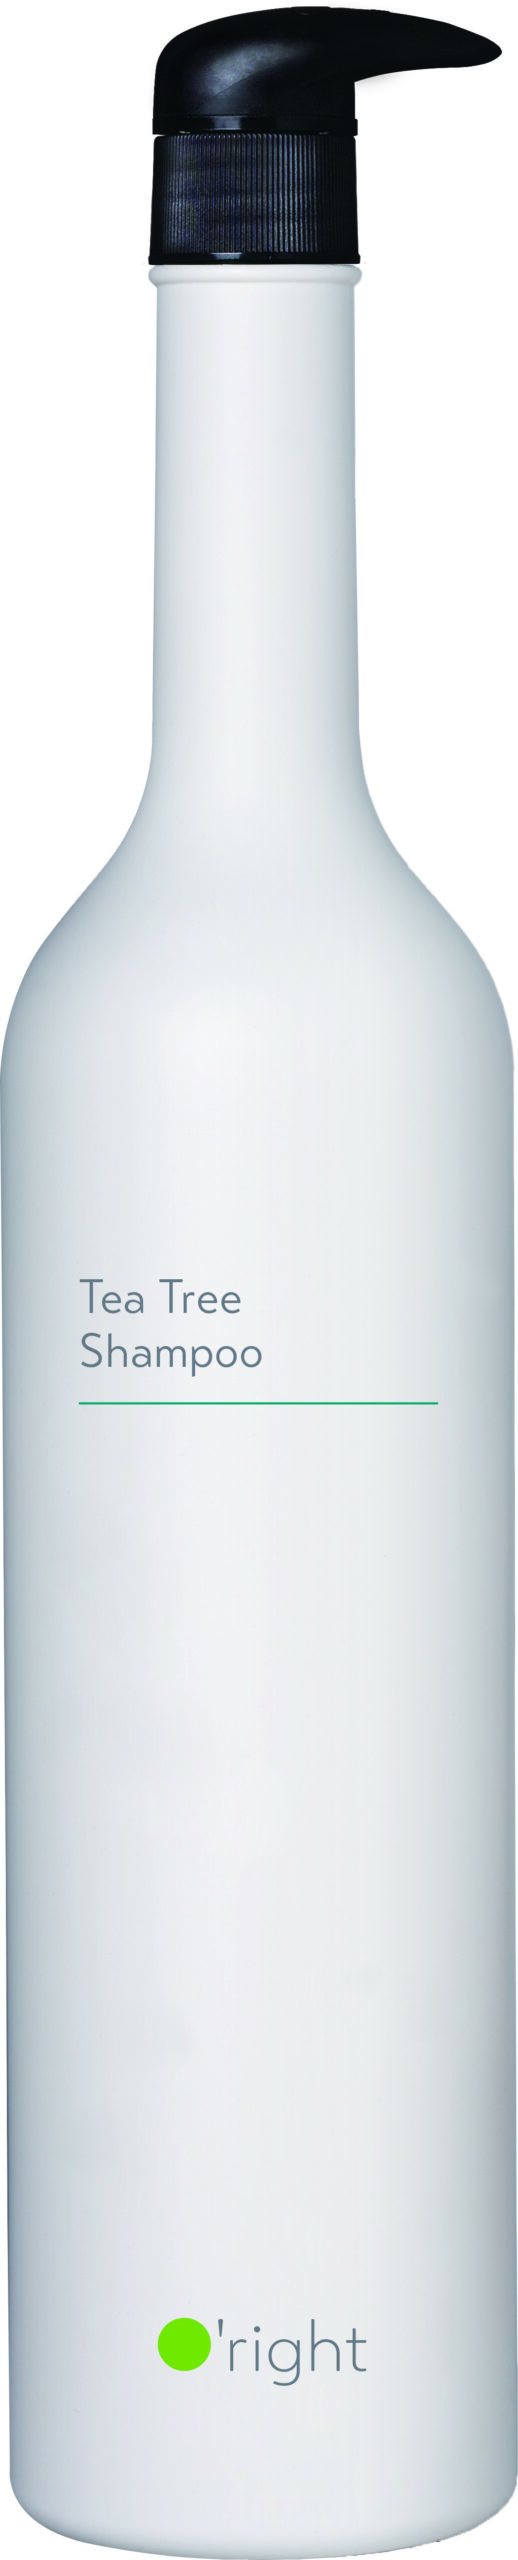 1000mL Tea Tree Shampoo e¶ae¨¹ae´e®c²¾ scaled